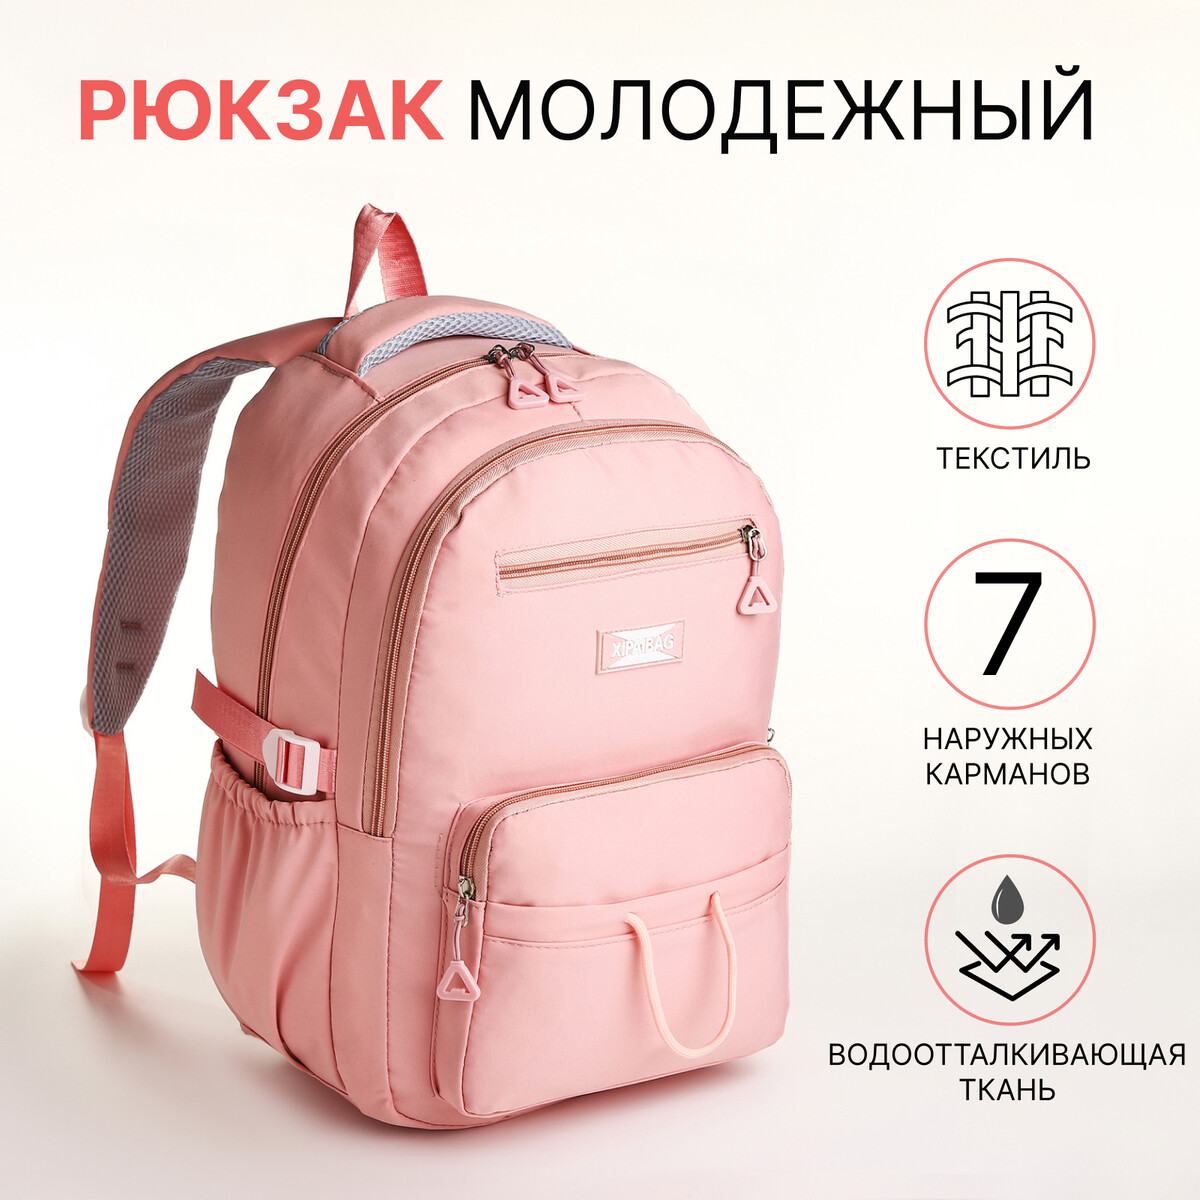 Рюкзак школьный из текстиля на молнии, 7 карманов, цвет розовый рюкзак школьный из текстиля на молнии 7 карманов